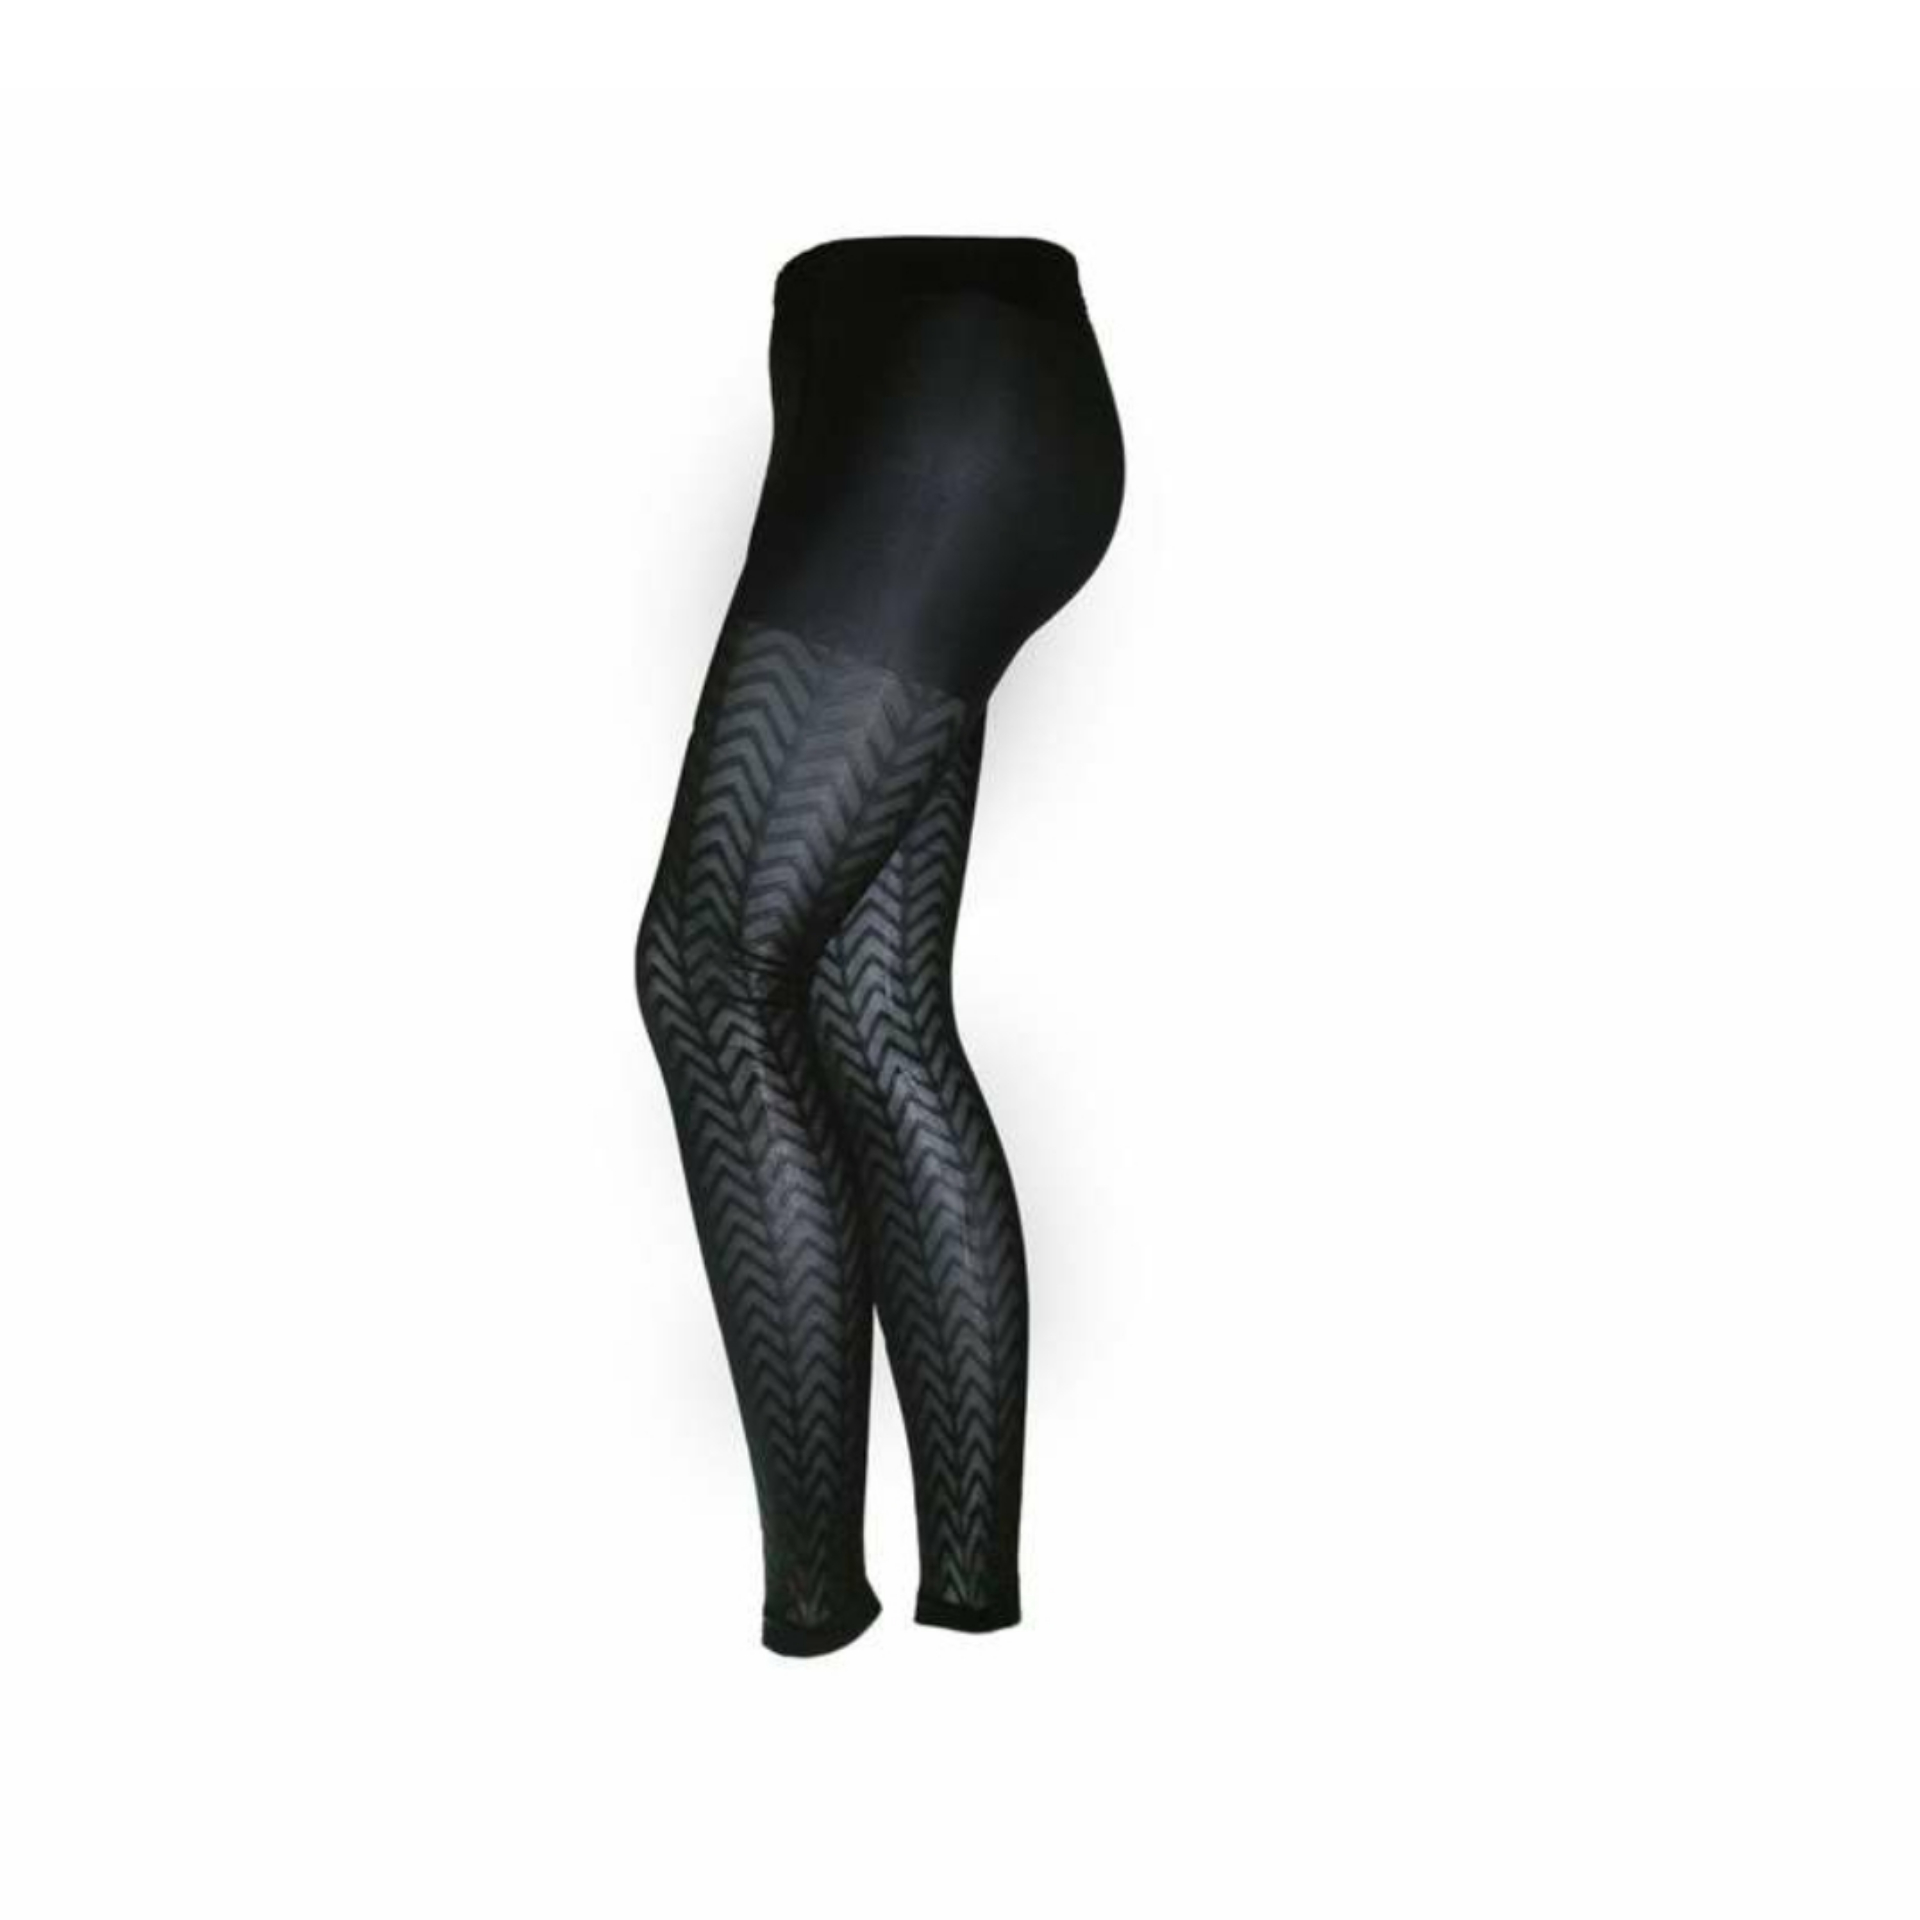 ساق شلواری زنانه اکسلنس مدل danuob -  - 2